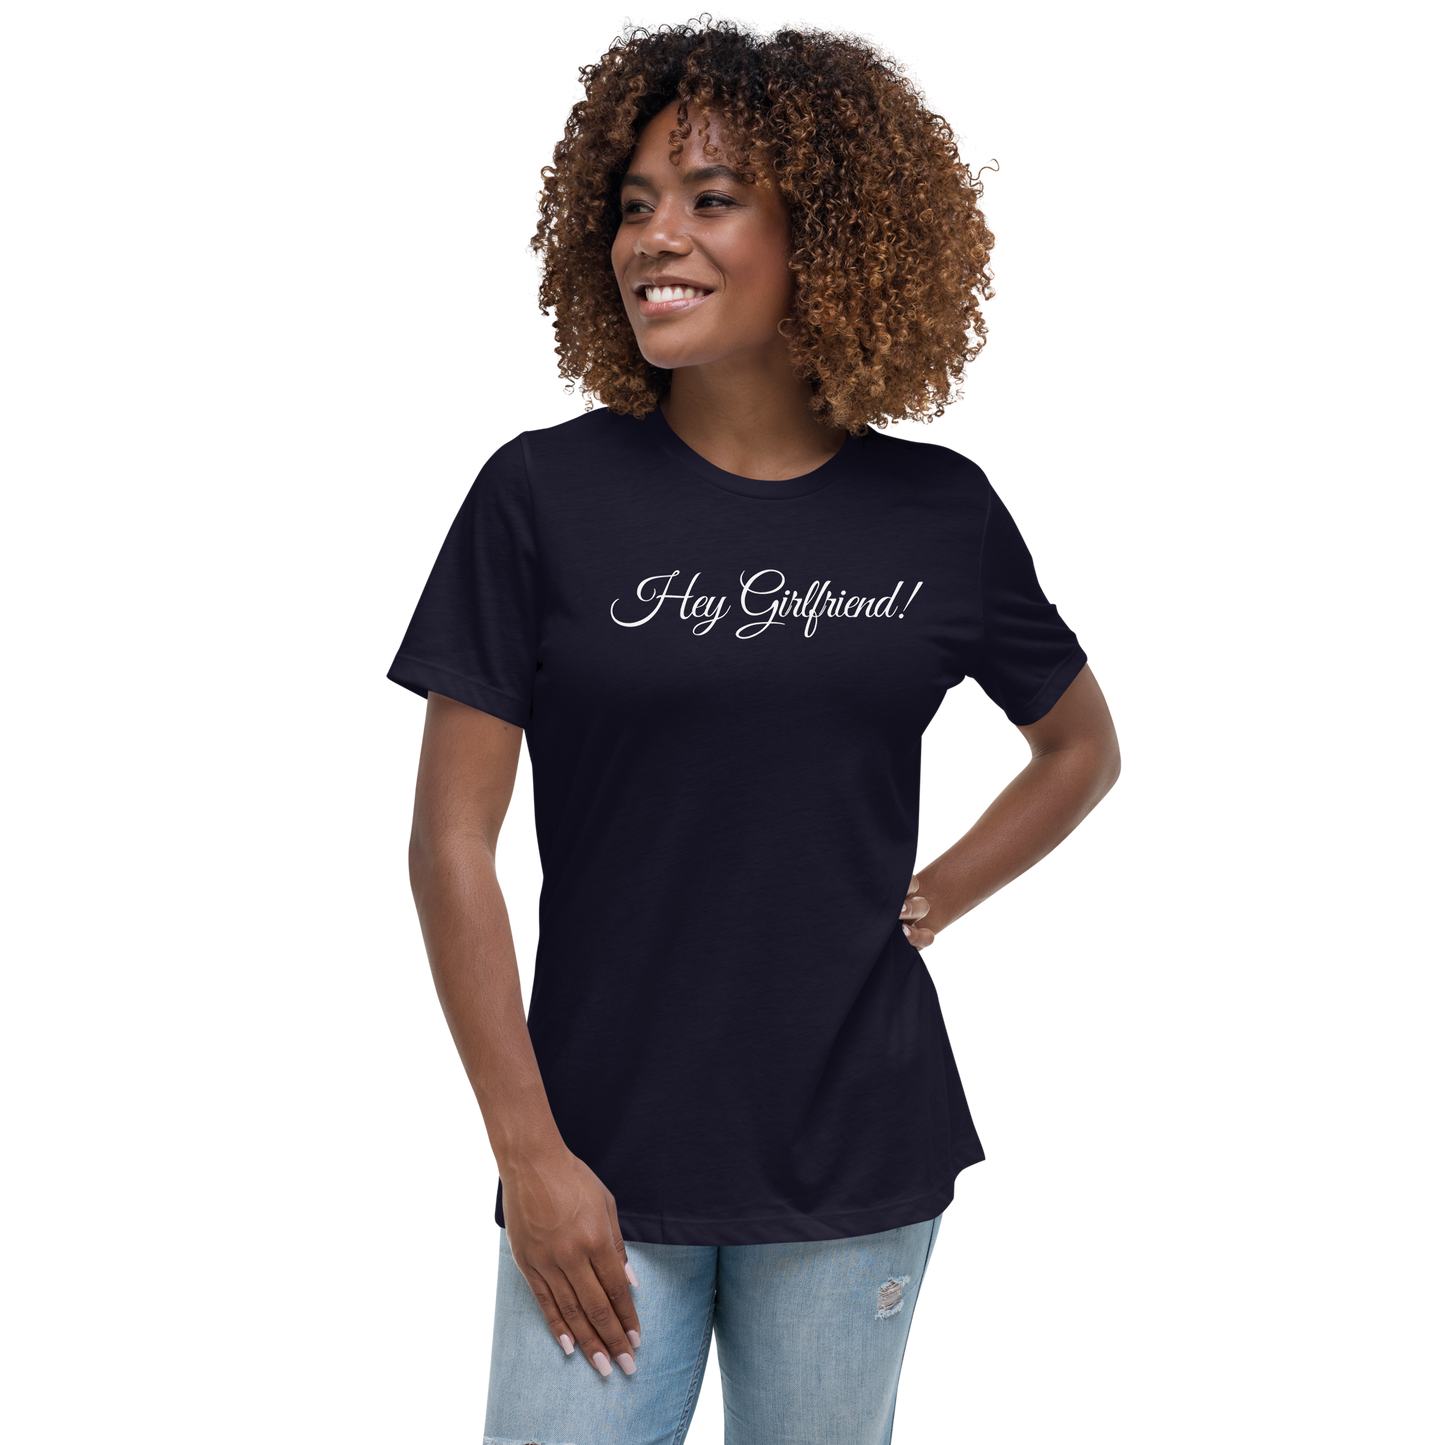 Hey Girlfriend! - Women's Relaxed T-Shirt